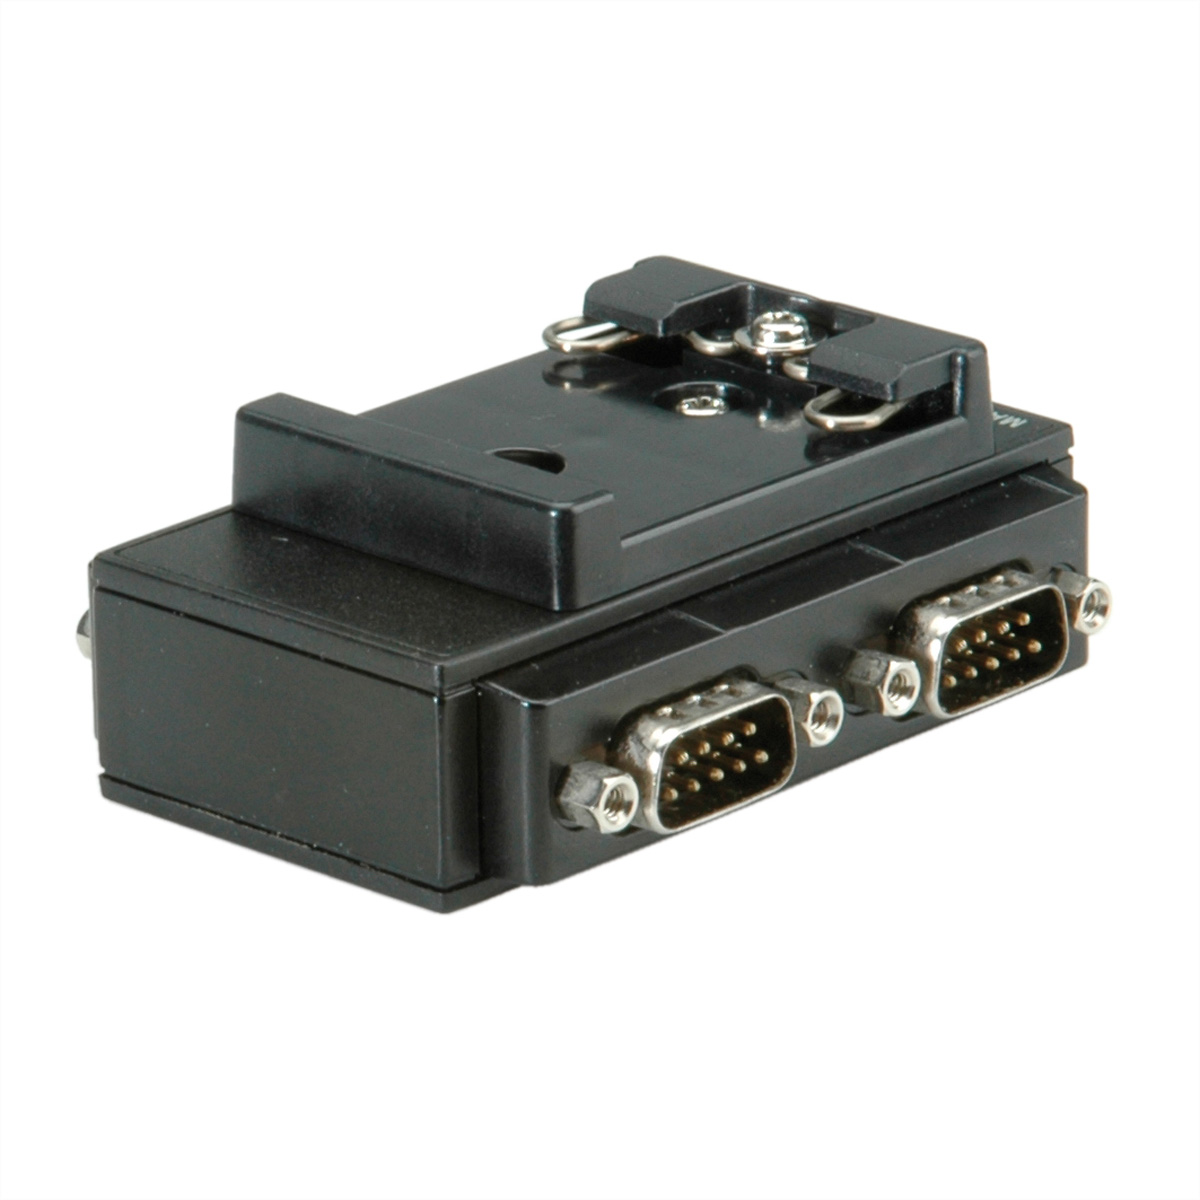 Port USB-Seriell 2.0 ROLINE 4 RS232 Adapter für DIN nach Hutschiene, USB Konverter